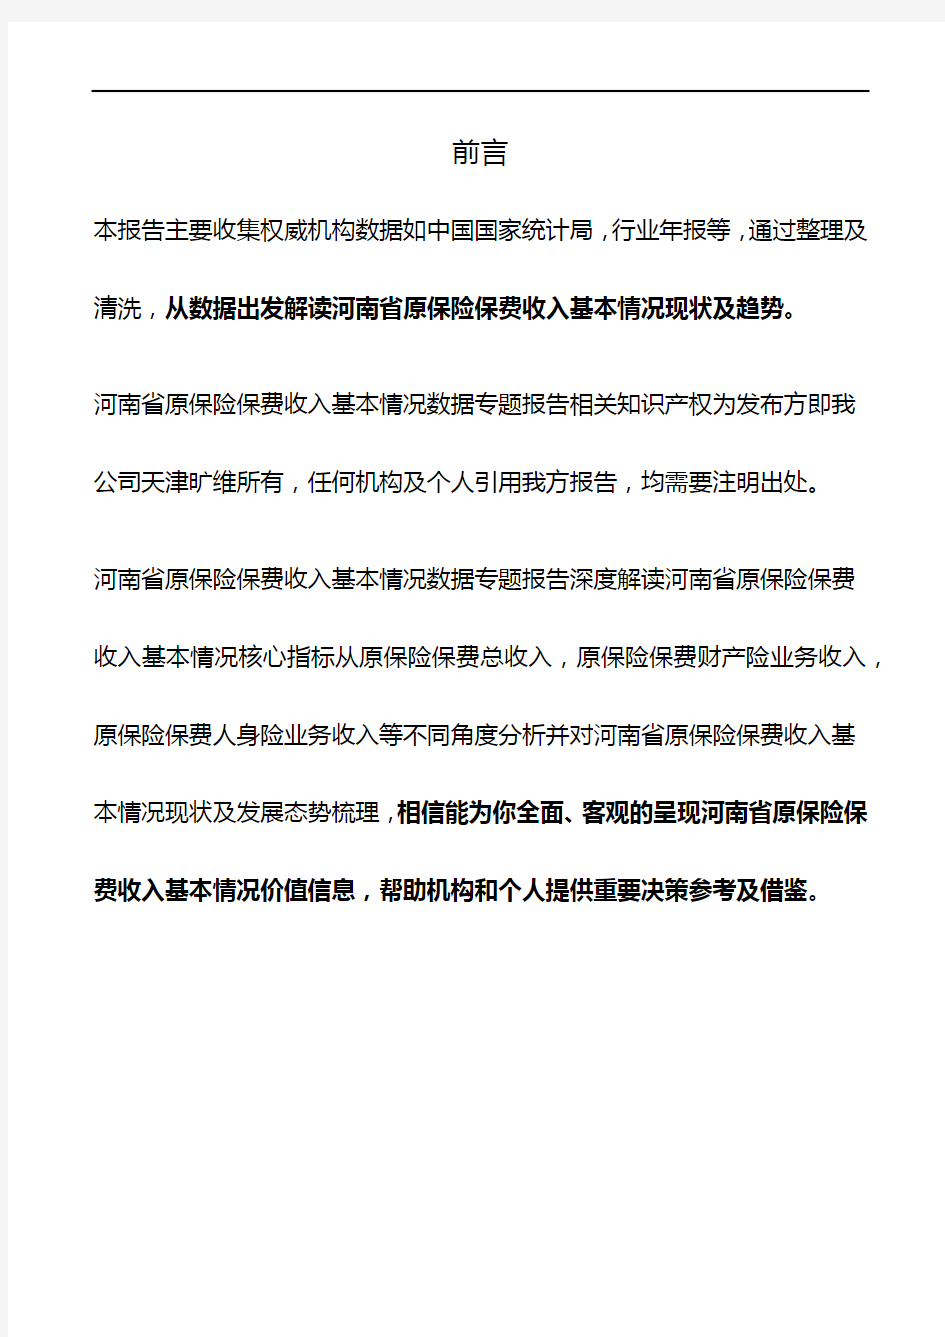 河南省原保险保费收入基本情况数据专题报告2019版